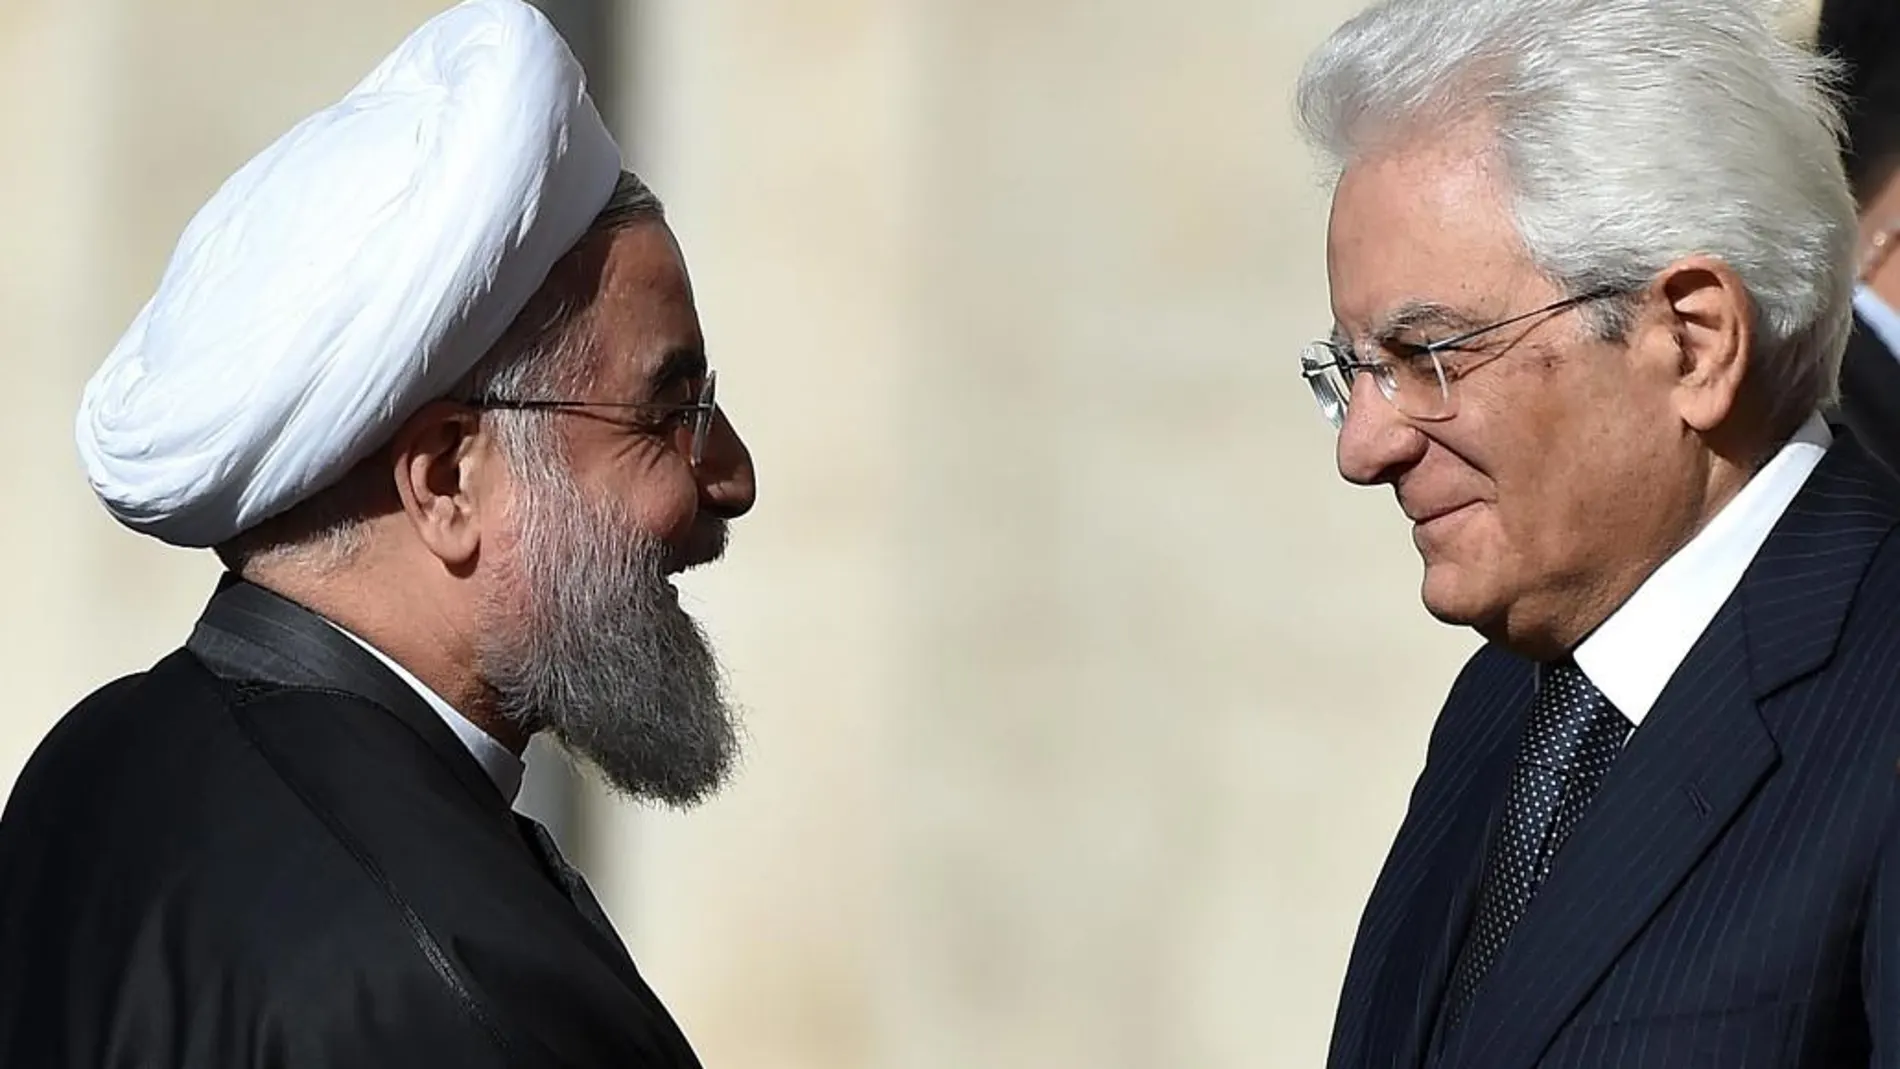 El jefe del Estado italiano, Sergio Mattarella da la bienvenida al presidente de Irán, Hasán Rohaní a su llegada al palacio del Quirinale en Roma.